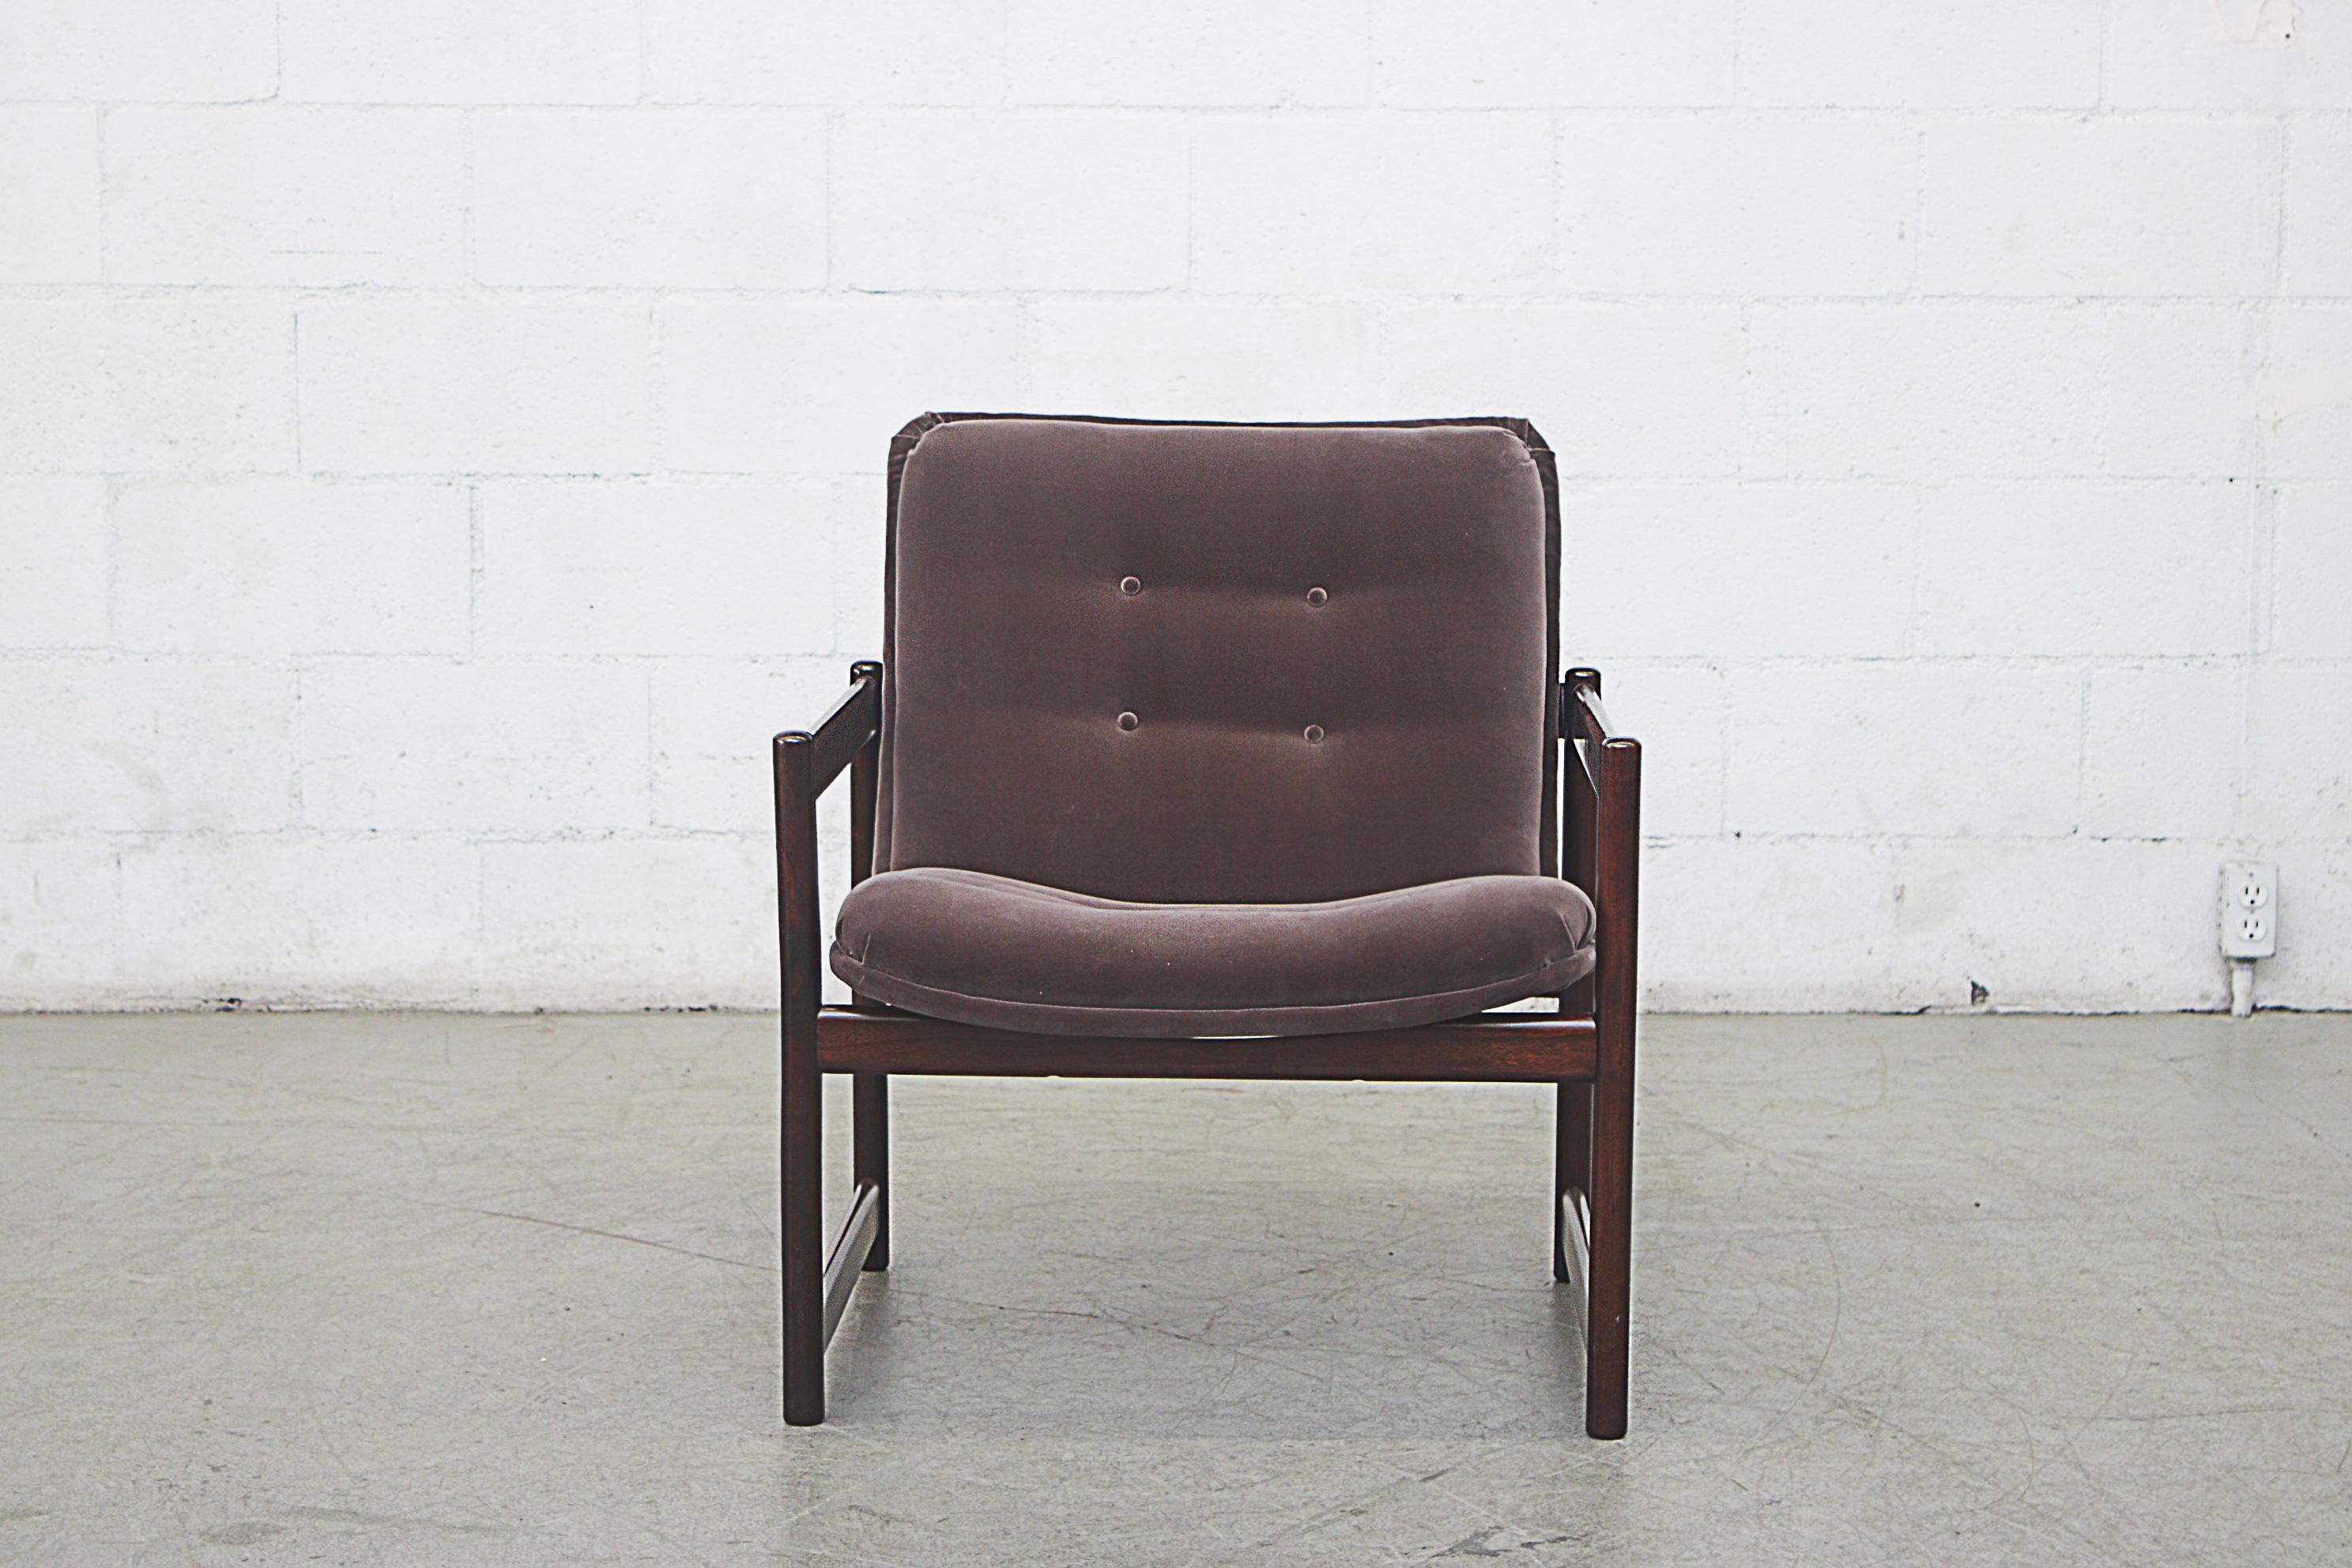 Handsome mahogany square framed Artifort lounge chair in new grey velvet upholstery.